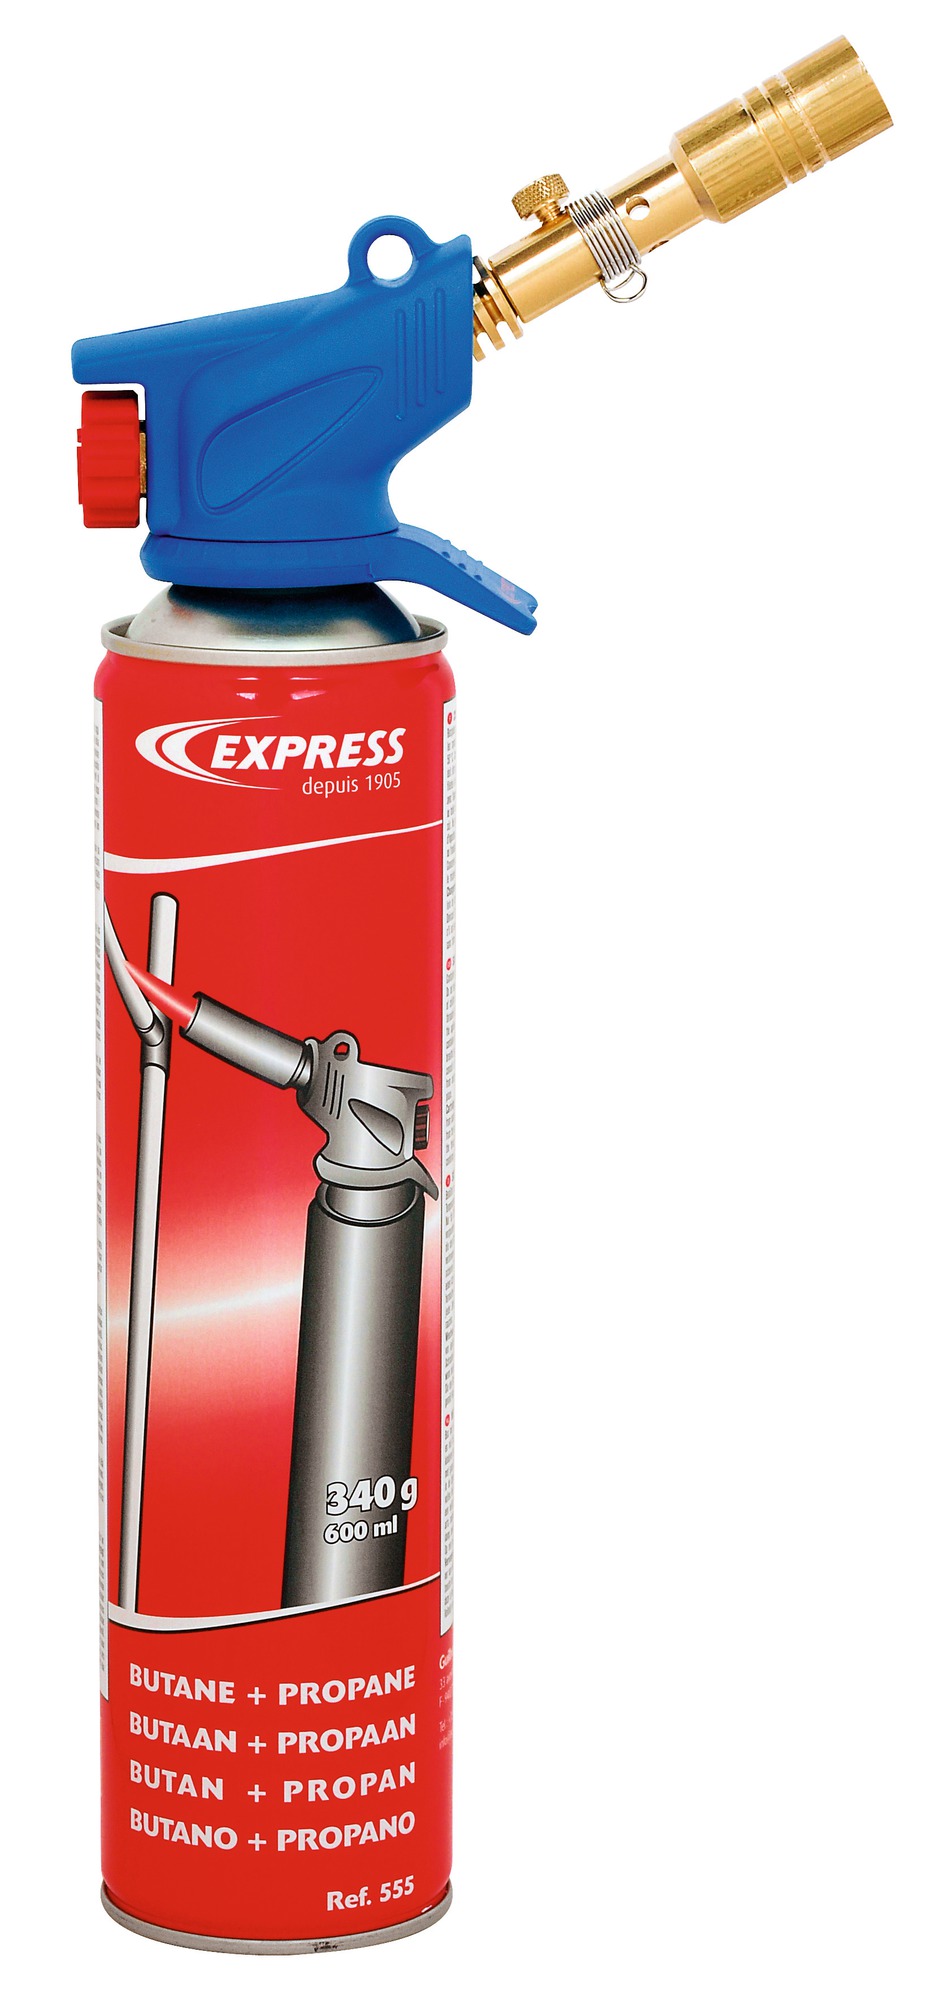 Lampe à souder à cartouche lampexpress Express - Equipement de base multi-usages - Classique